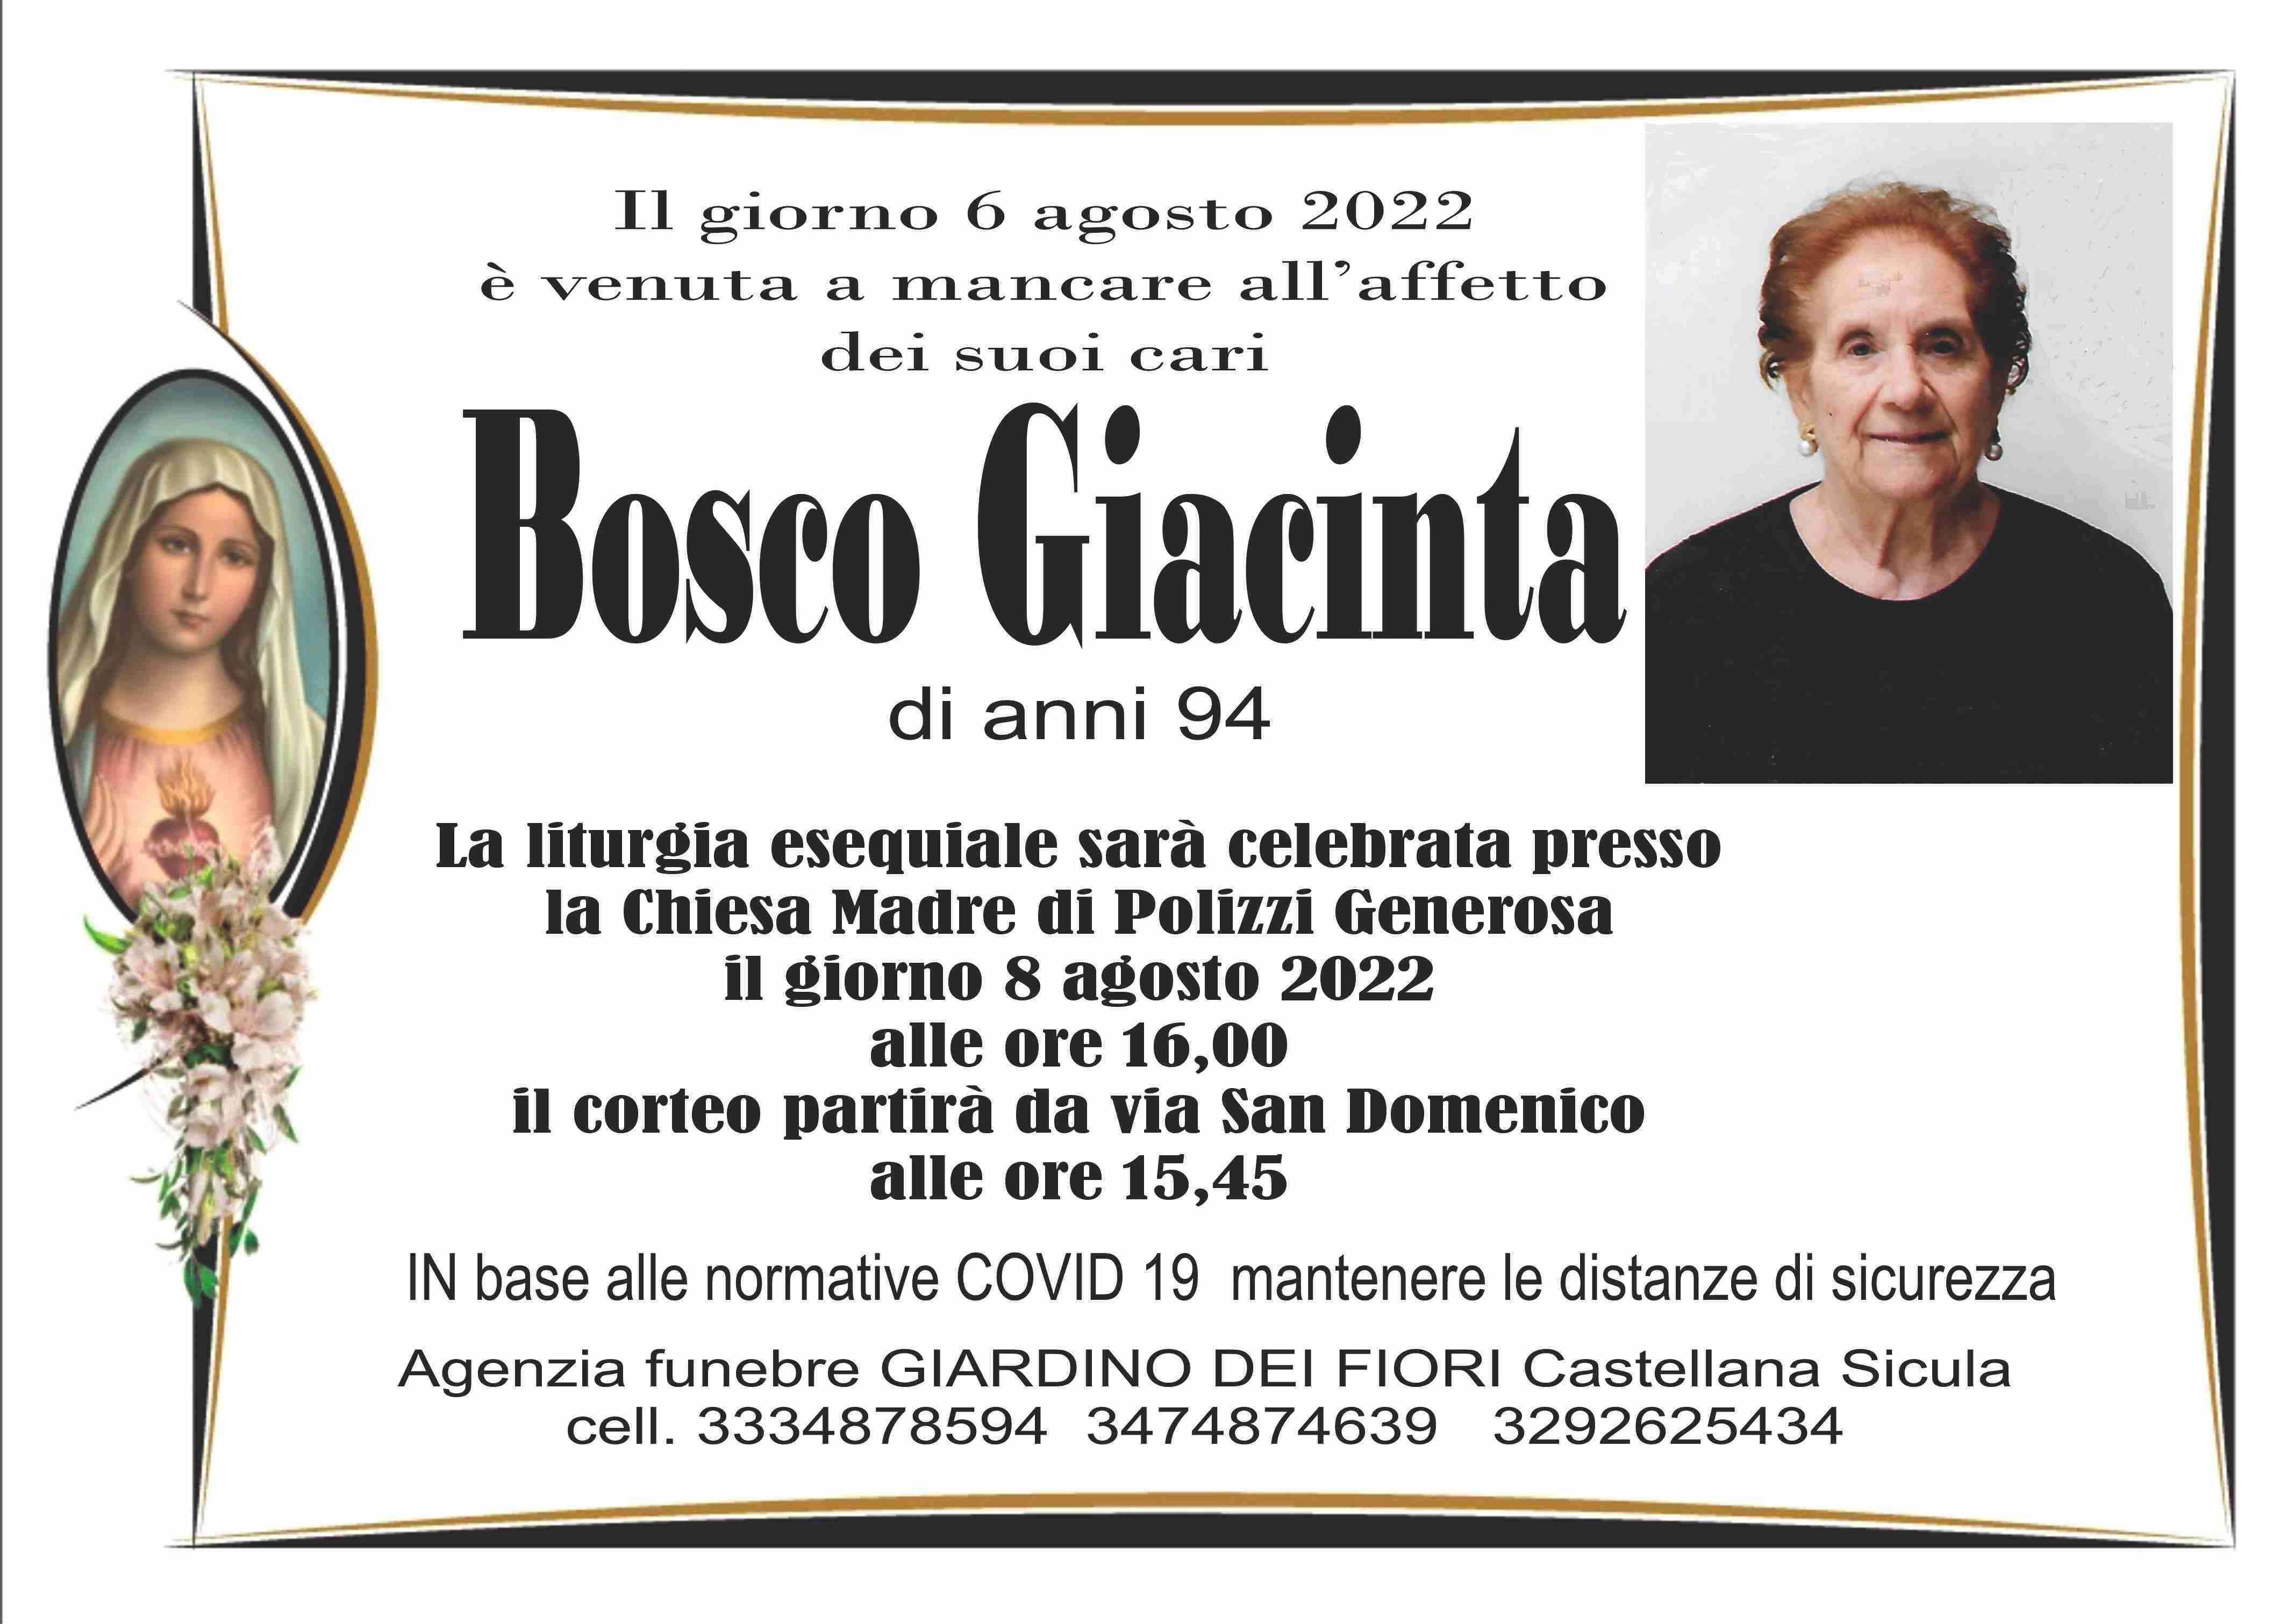 Giacinta Bosco